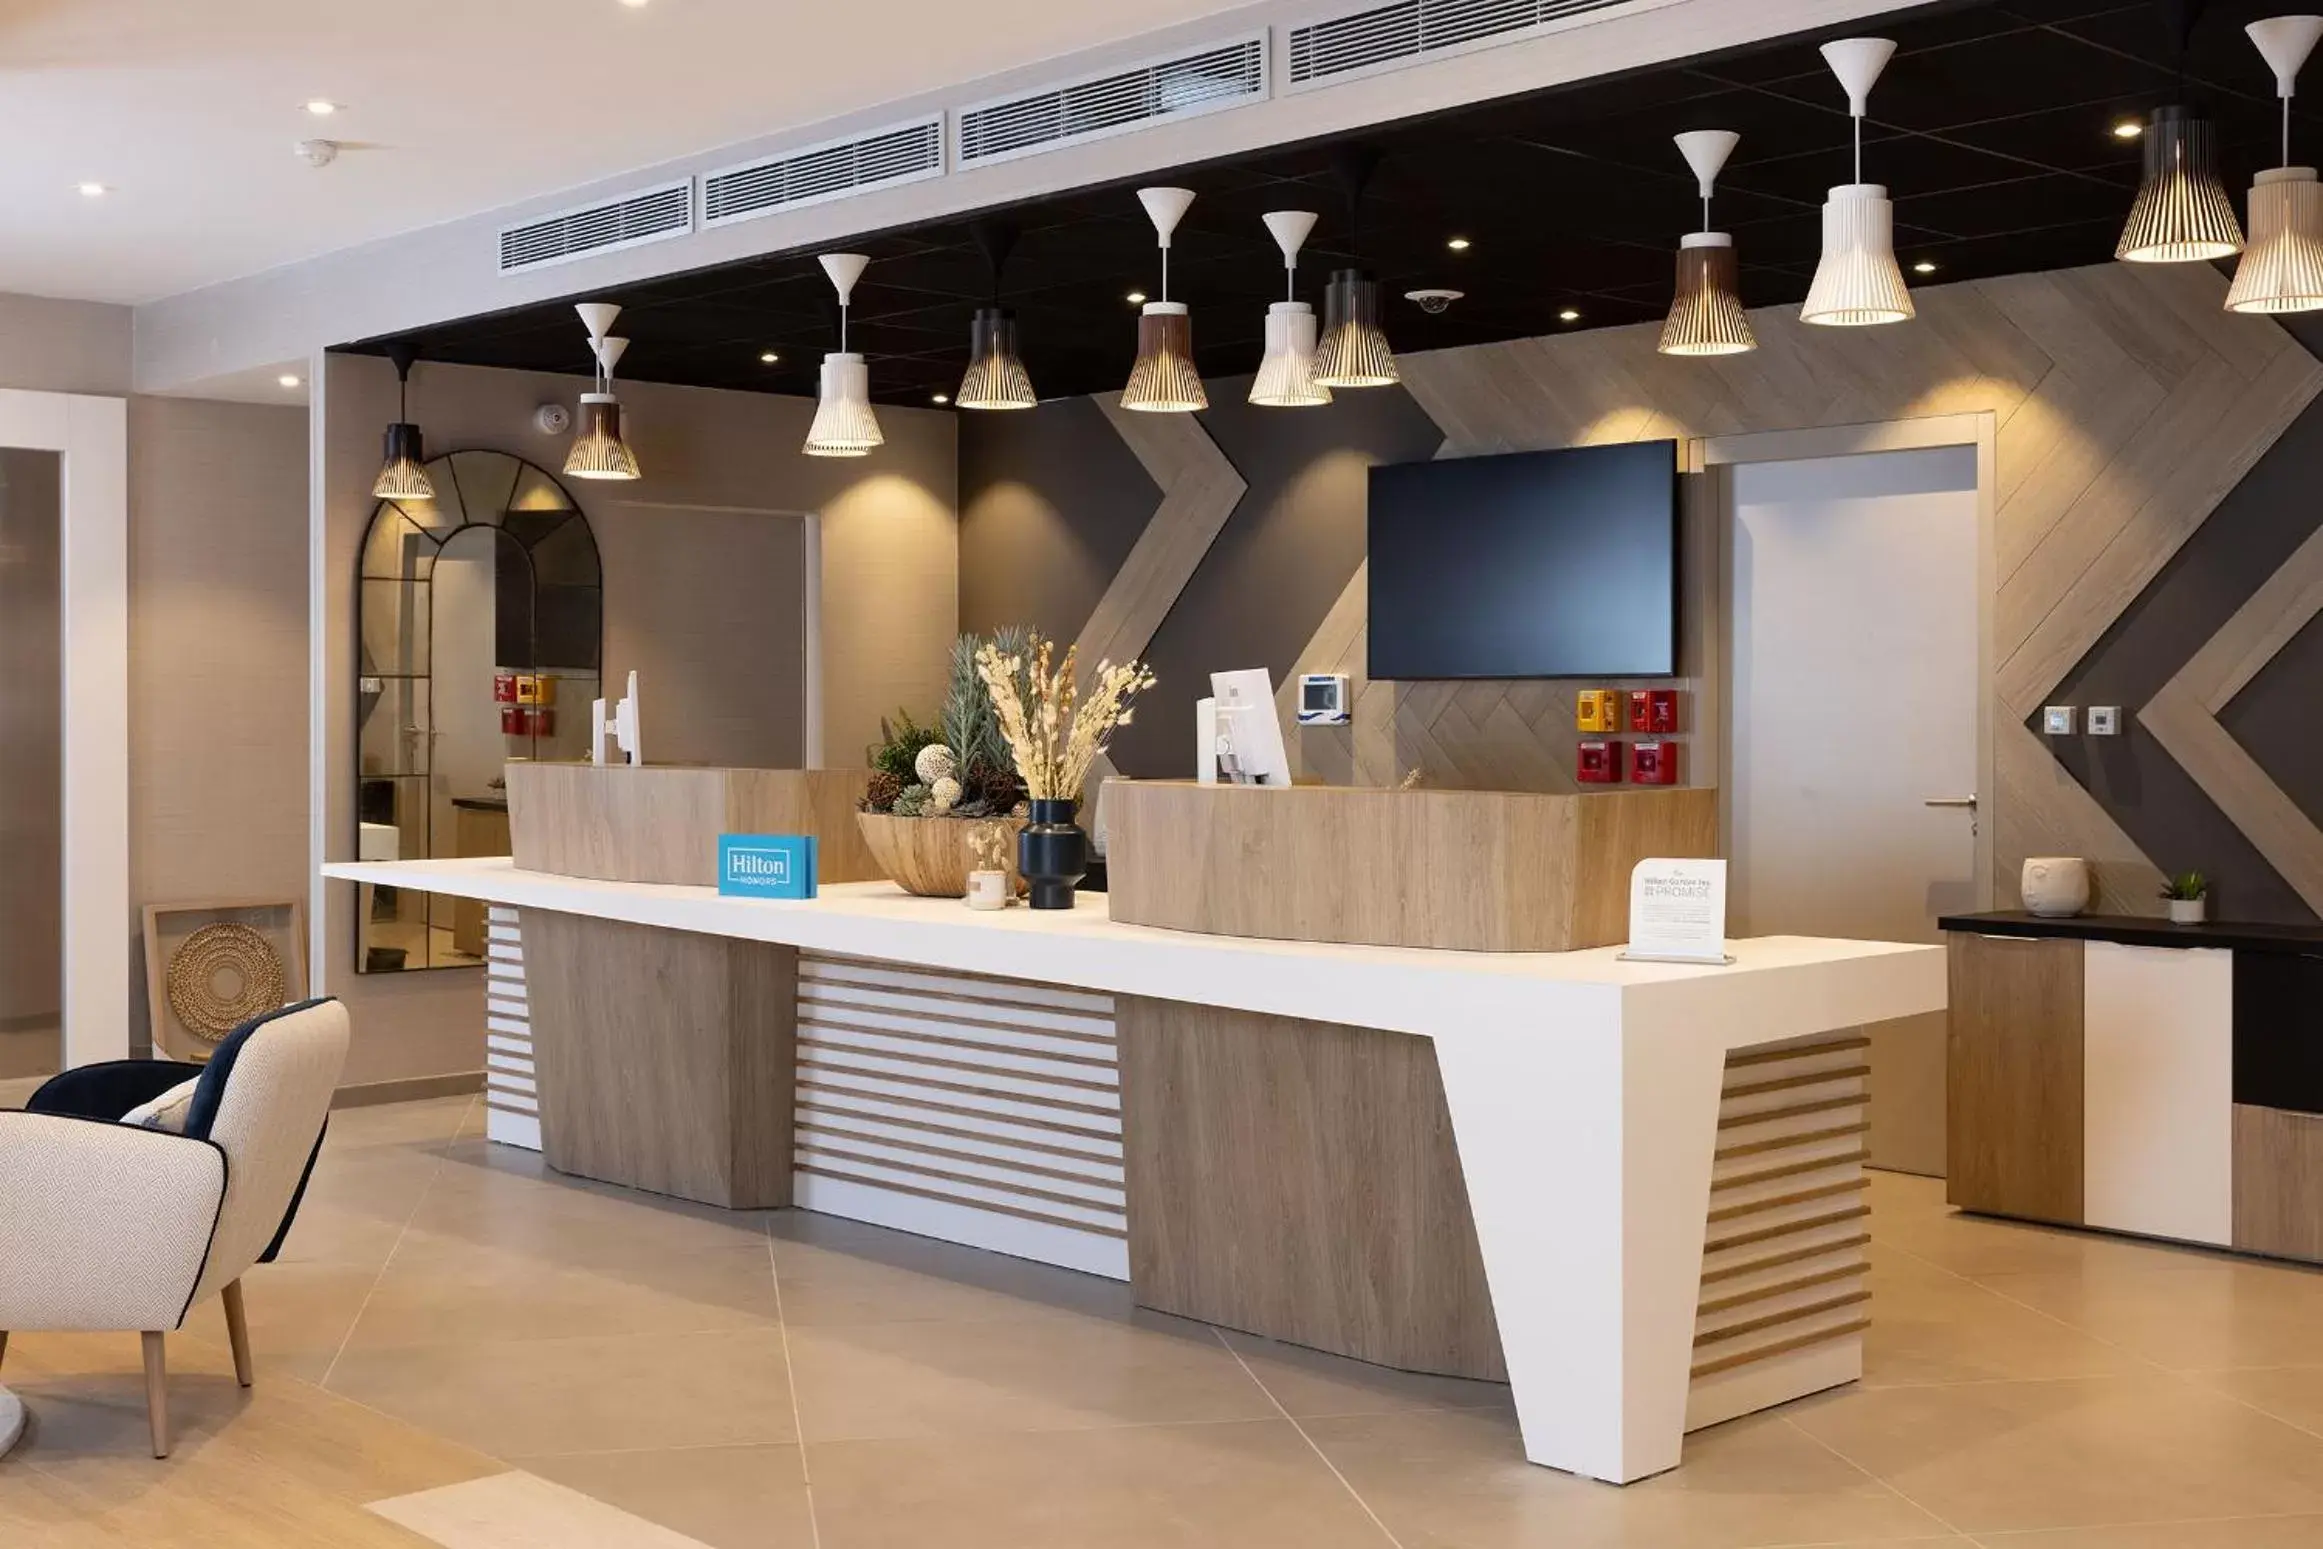 Lobby or reception, Lobby/Reception in Hilton Garden Inn Le Havre Centre